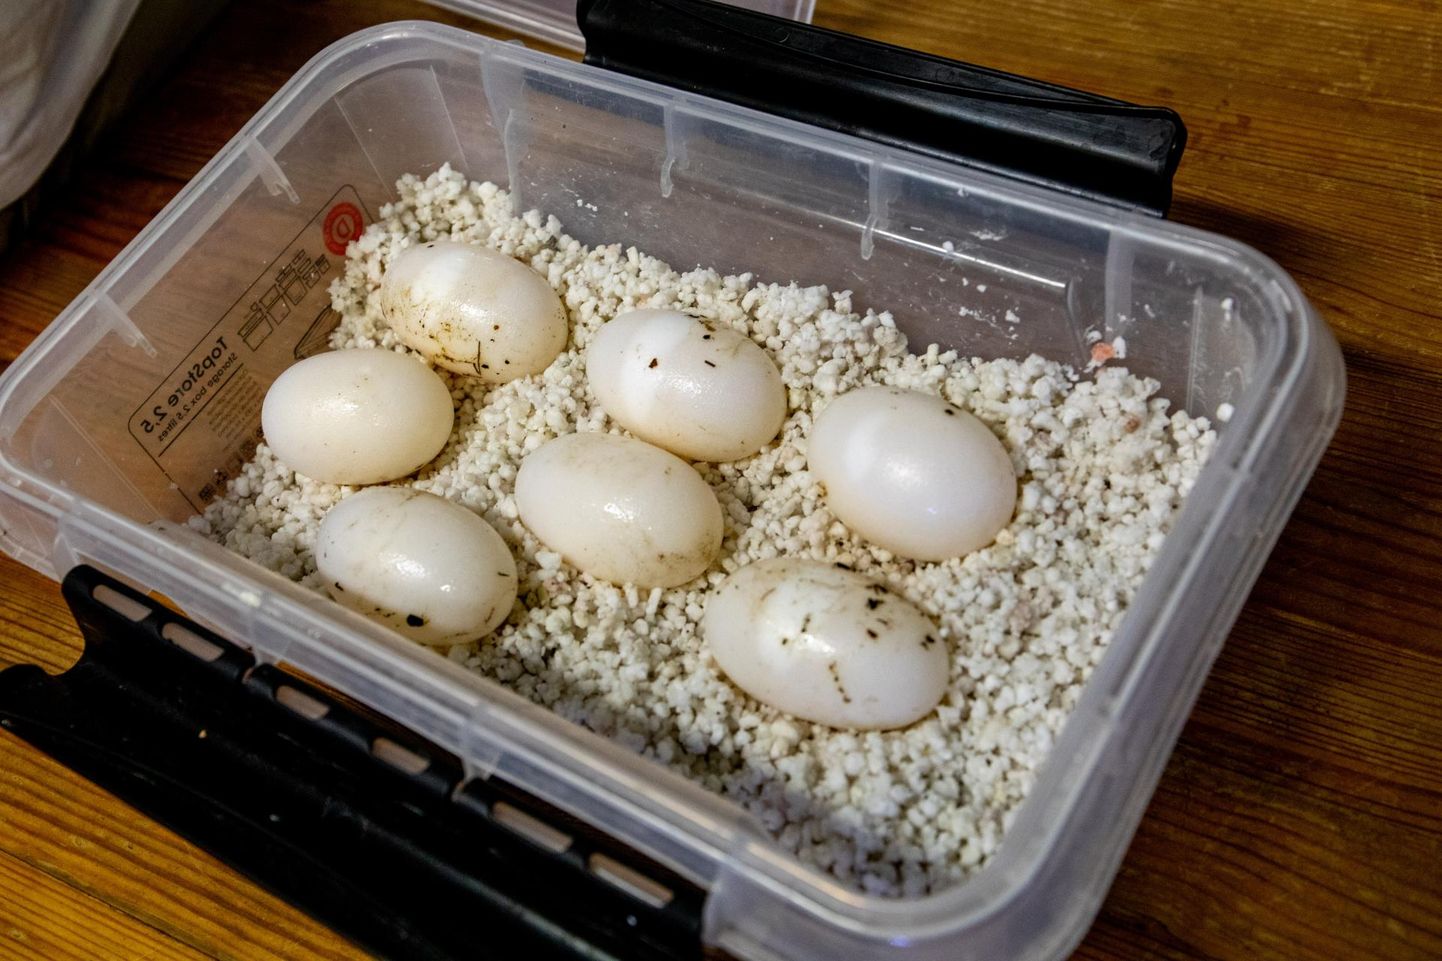 Kaimani munade arv sõltub looma suurusest. Mida noorem ja väiksem isend, seda vähem ta muneb.